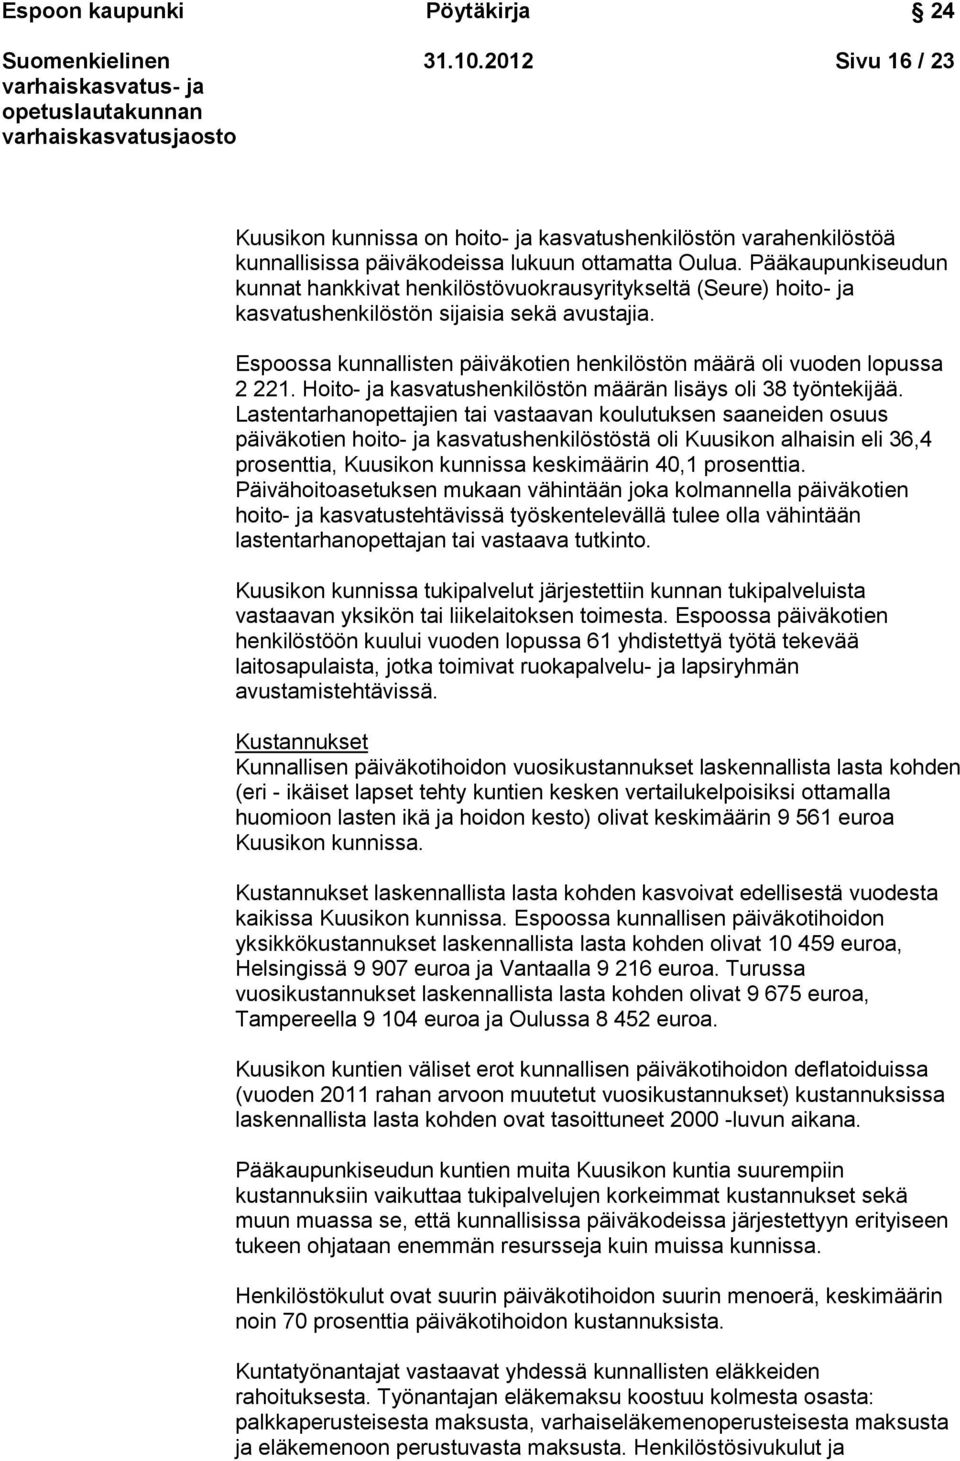 Espoossa kunnallisten päiväkotien henkilöstön määrä oli vuoden lopussa 2 221. Hoito- ja kasvatushenkilöstön määrän lisäys oli 38 työntekijää.